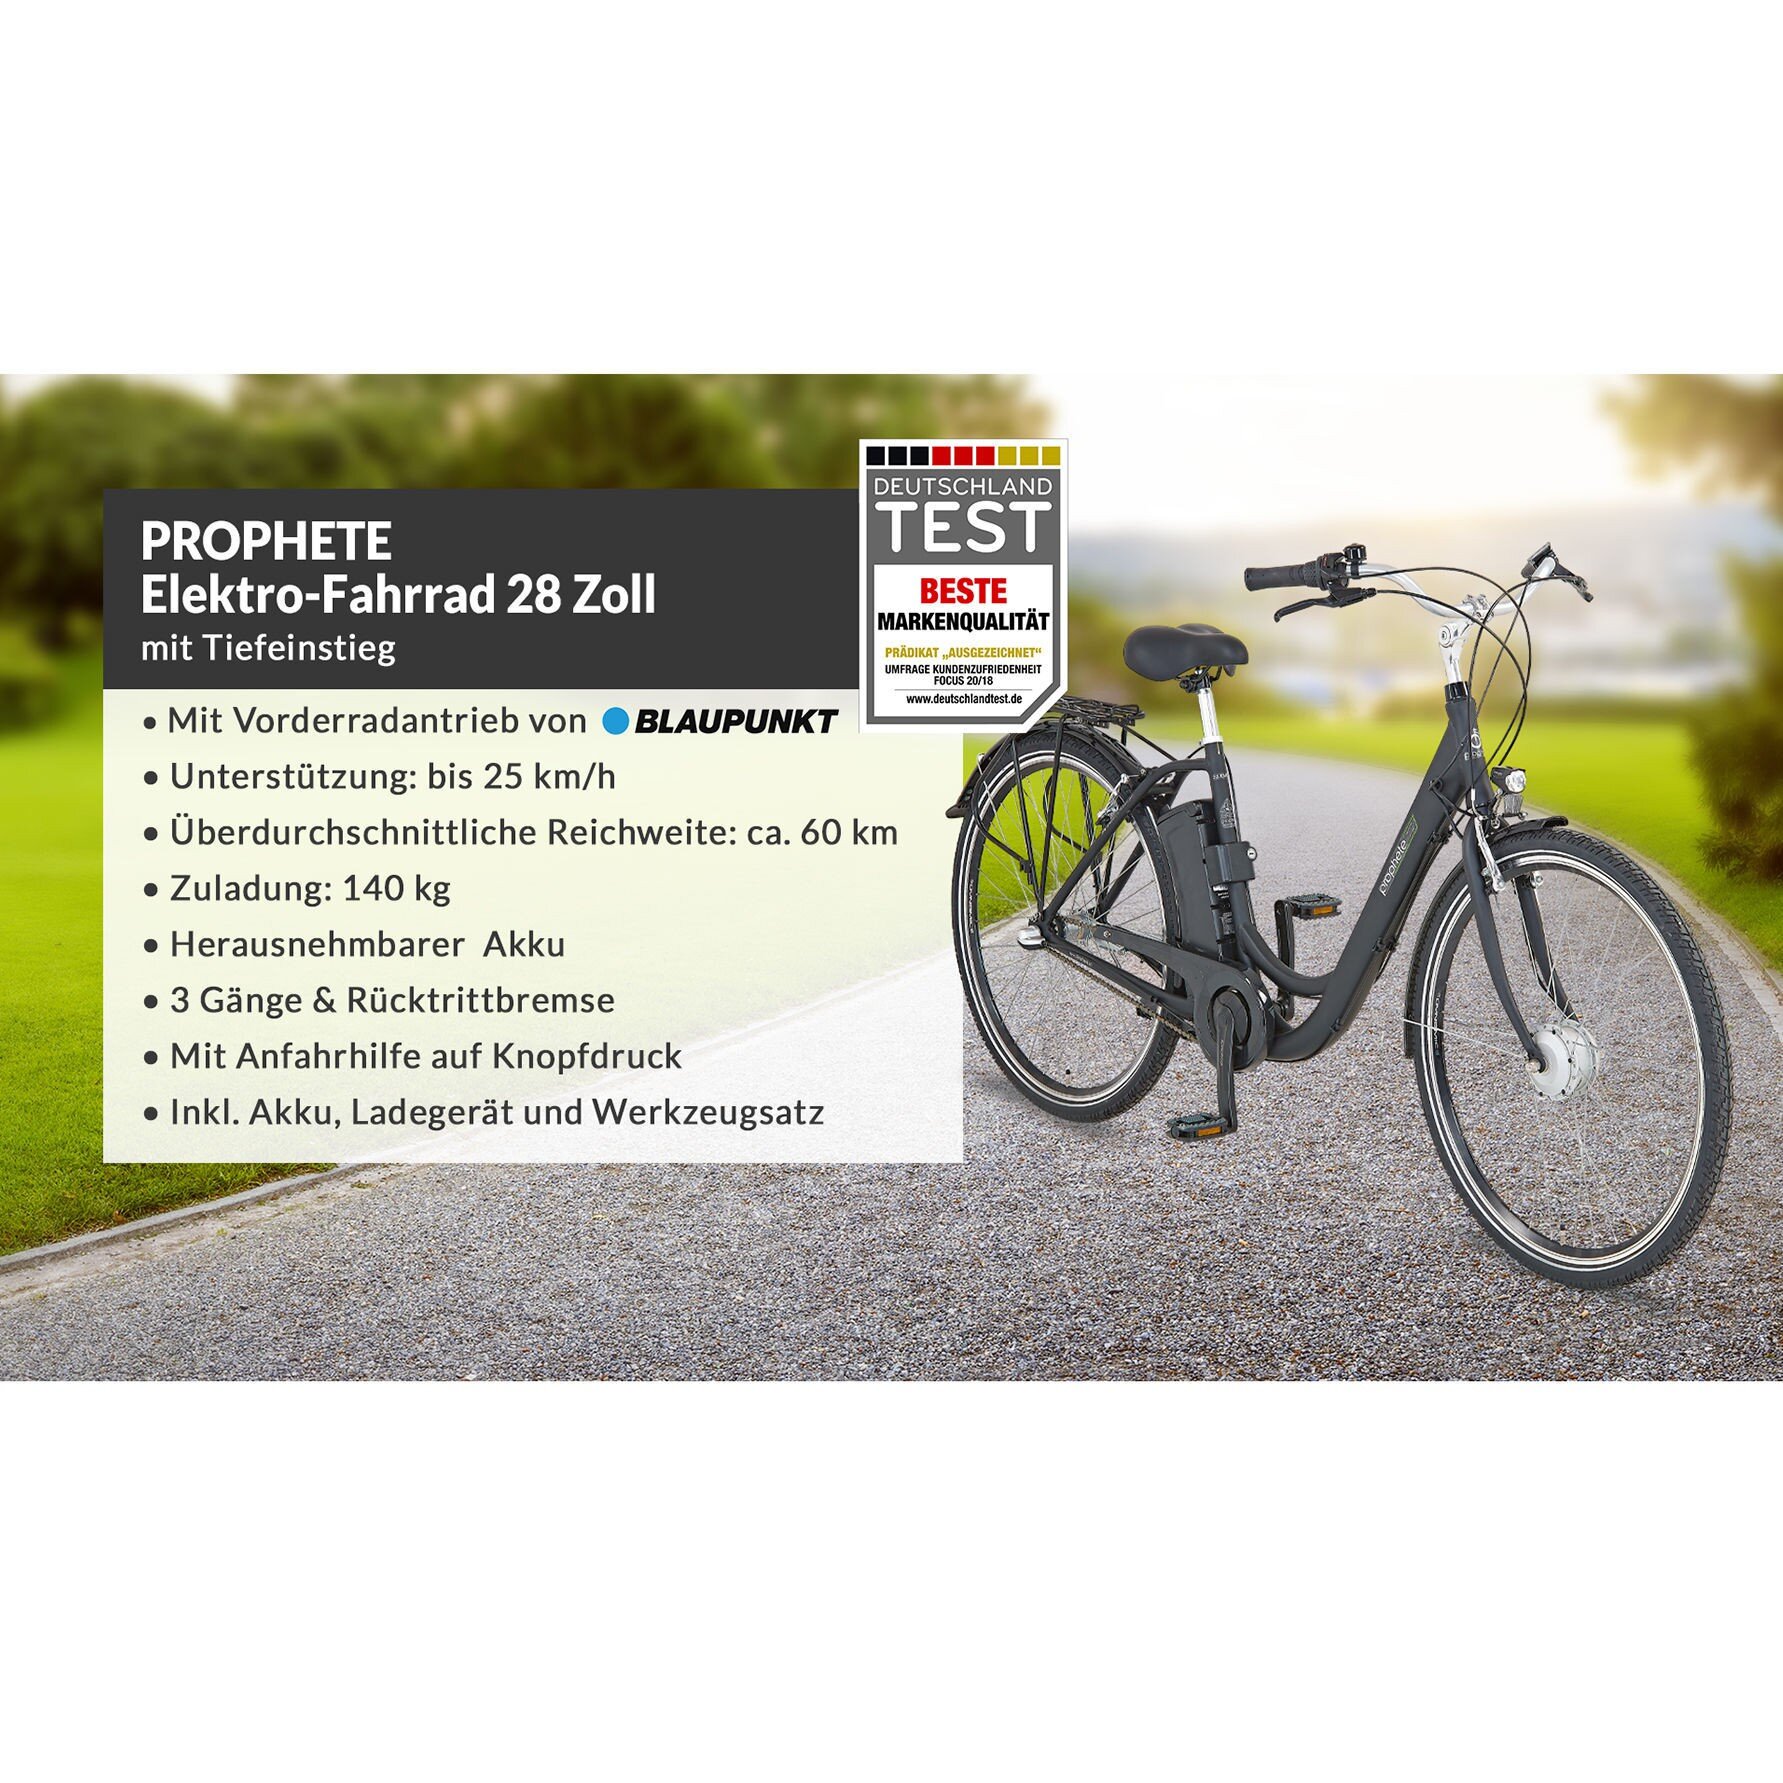 PROPHETE Elektro-Fahrrad Tiefeinsteiger 28 Zoll - Alle Produkte - Mobilität  der Zukunft - Marken